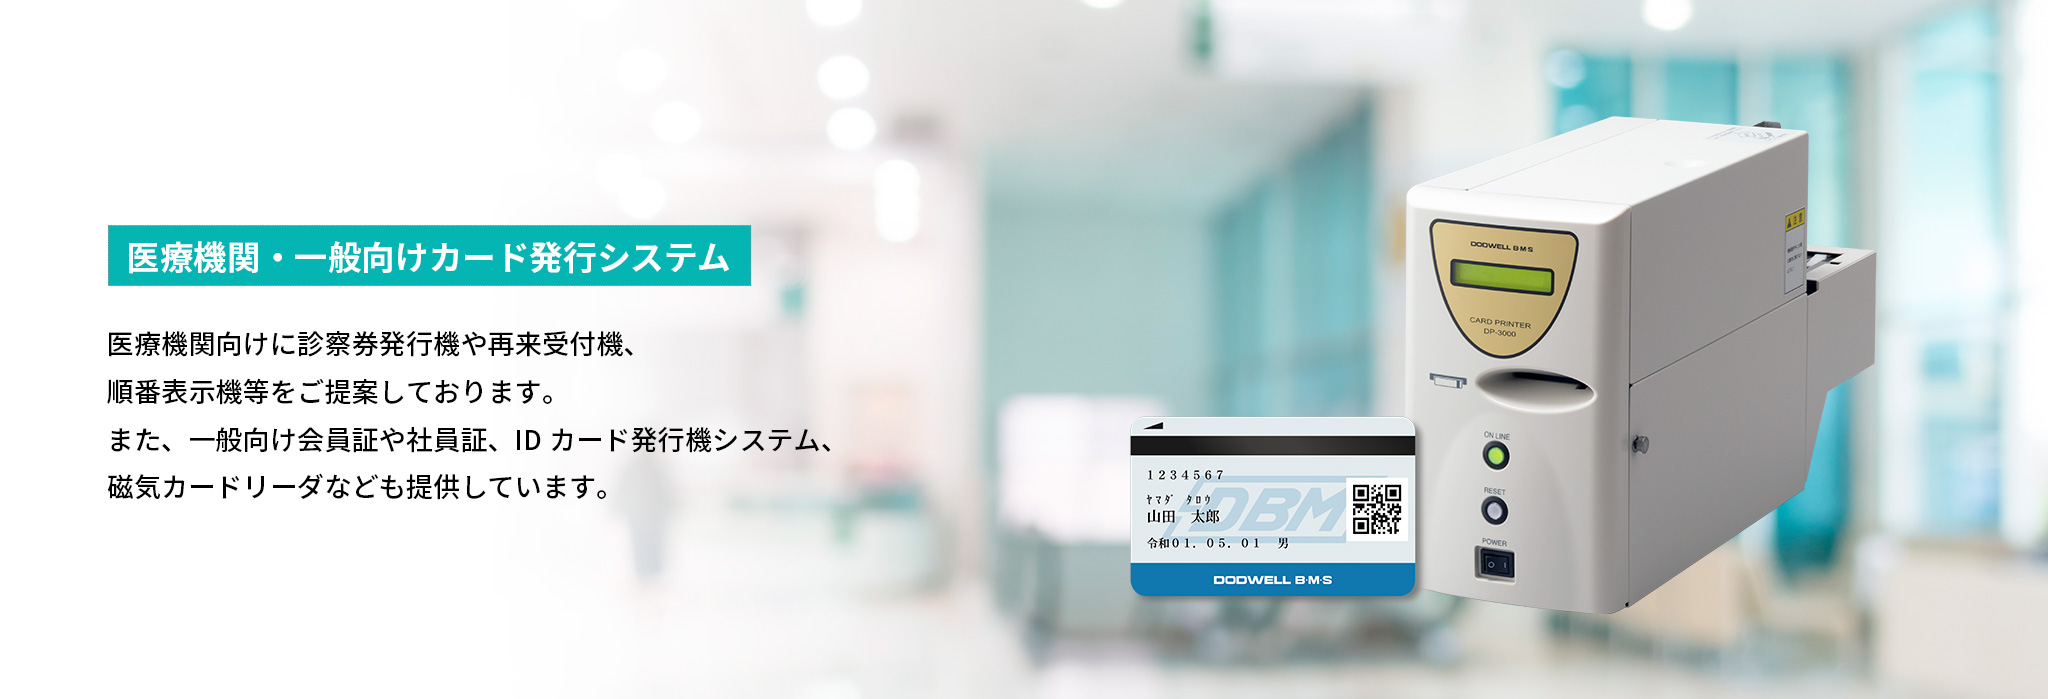 カード発行システム プリンタ DP-1000 ドッドウェル 【業務用//店舗